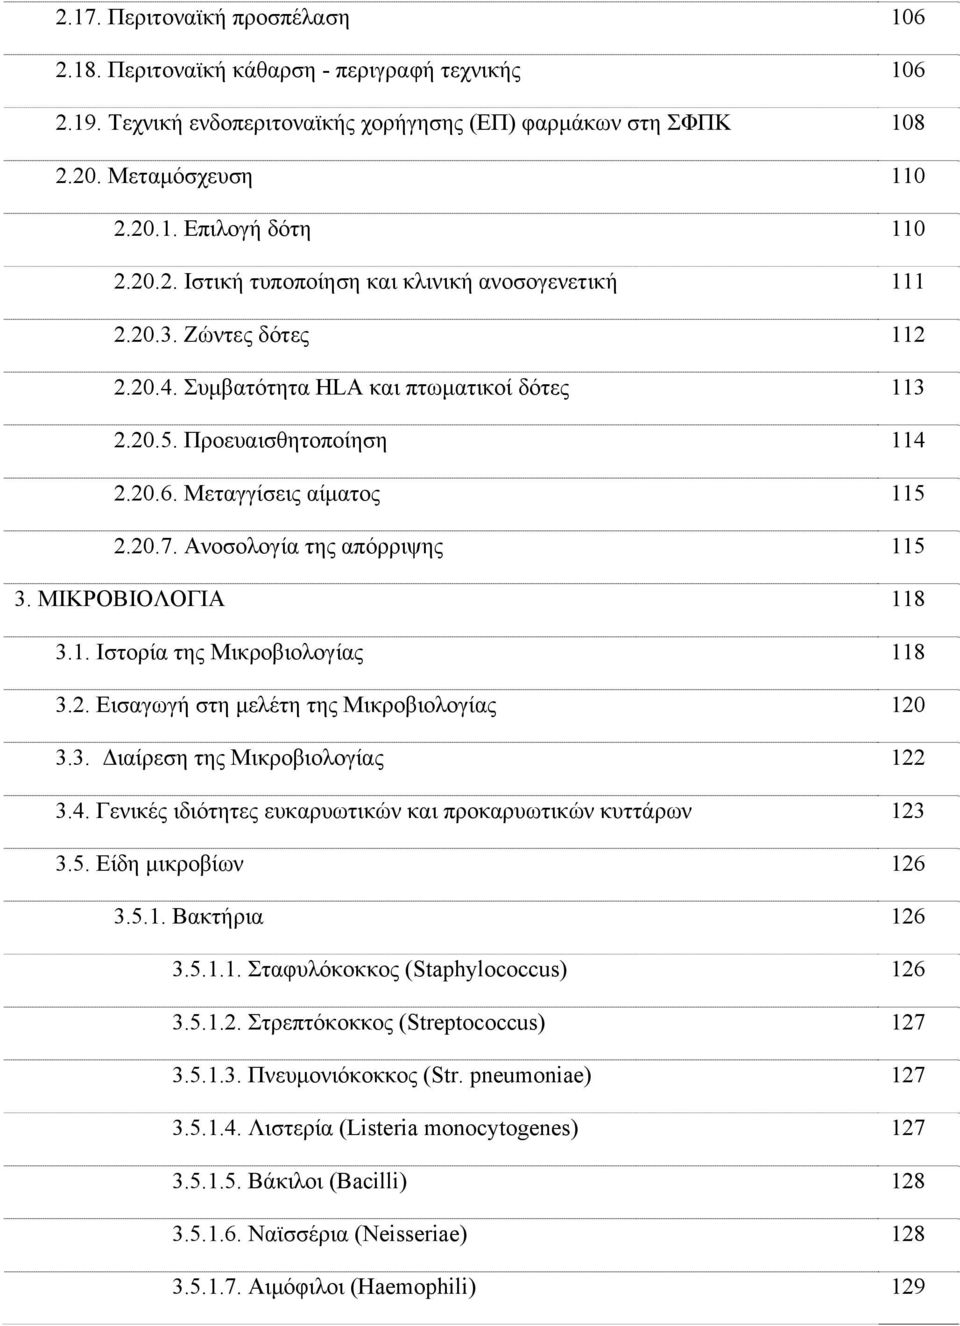 Ανοσολογία της απόρριψης 115 3. ΜΙΚΡΟΒΙΟΛΟΓΙΑ 118 3.1. Ιστορία της Μικροβιολογίας 118 3.2. Εισαγωγή στη μελέτη της Μικροβιολογίας 120 3.3. Διαίρεση της Μικροβιολογίας 122 3.4.